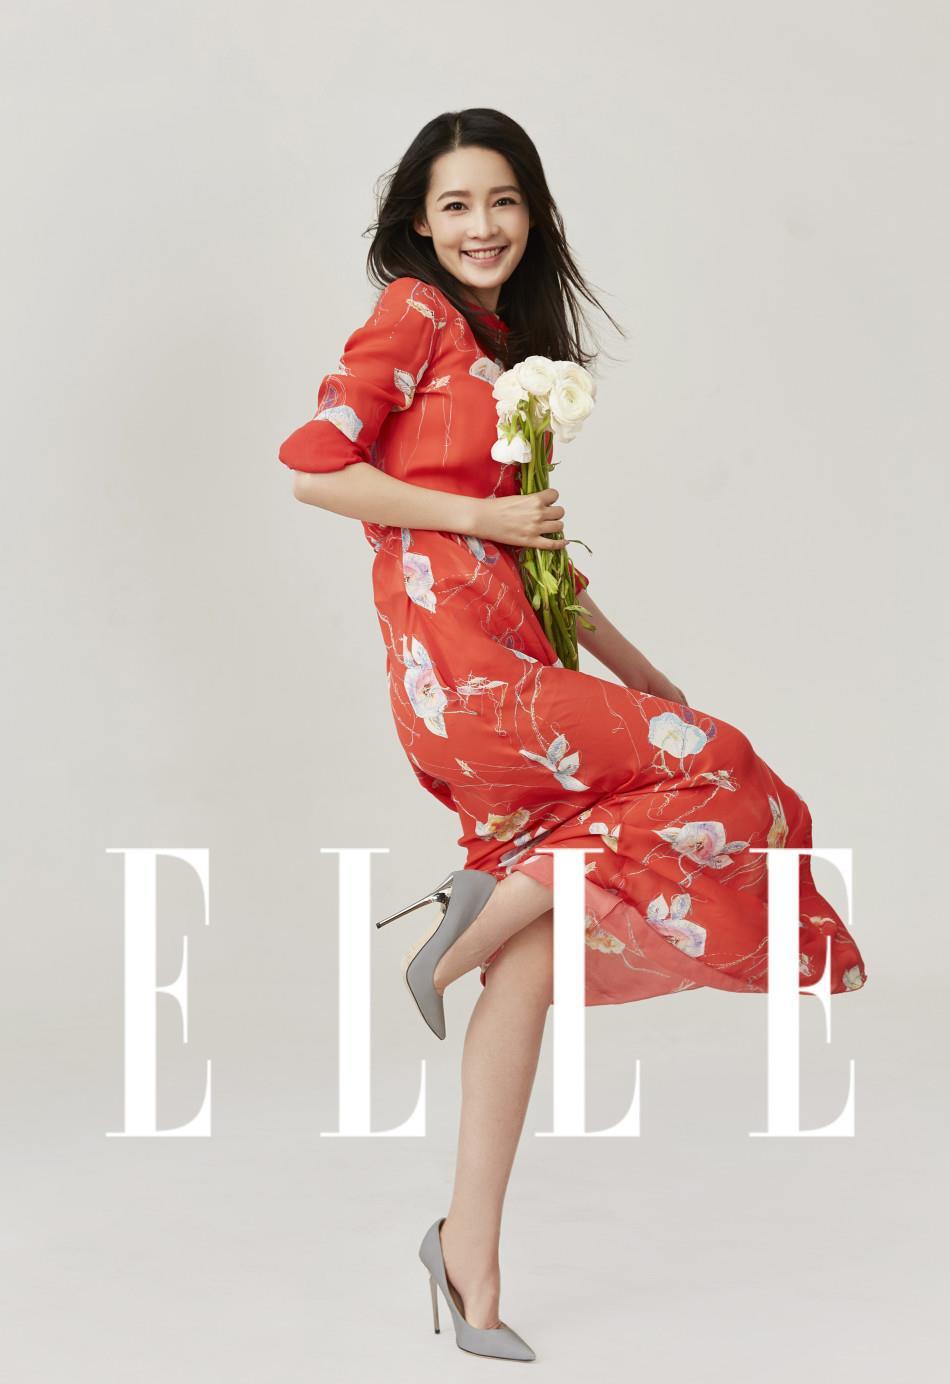 李沁最新时尚大片 御姐气场冷中带甜,李沁登《Elle》六月上内页